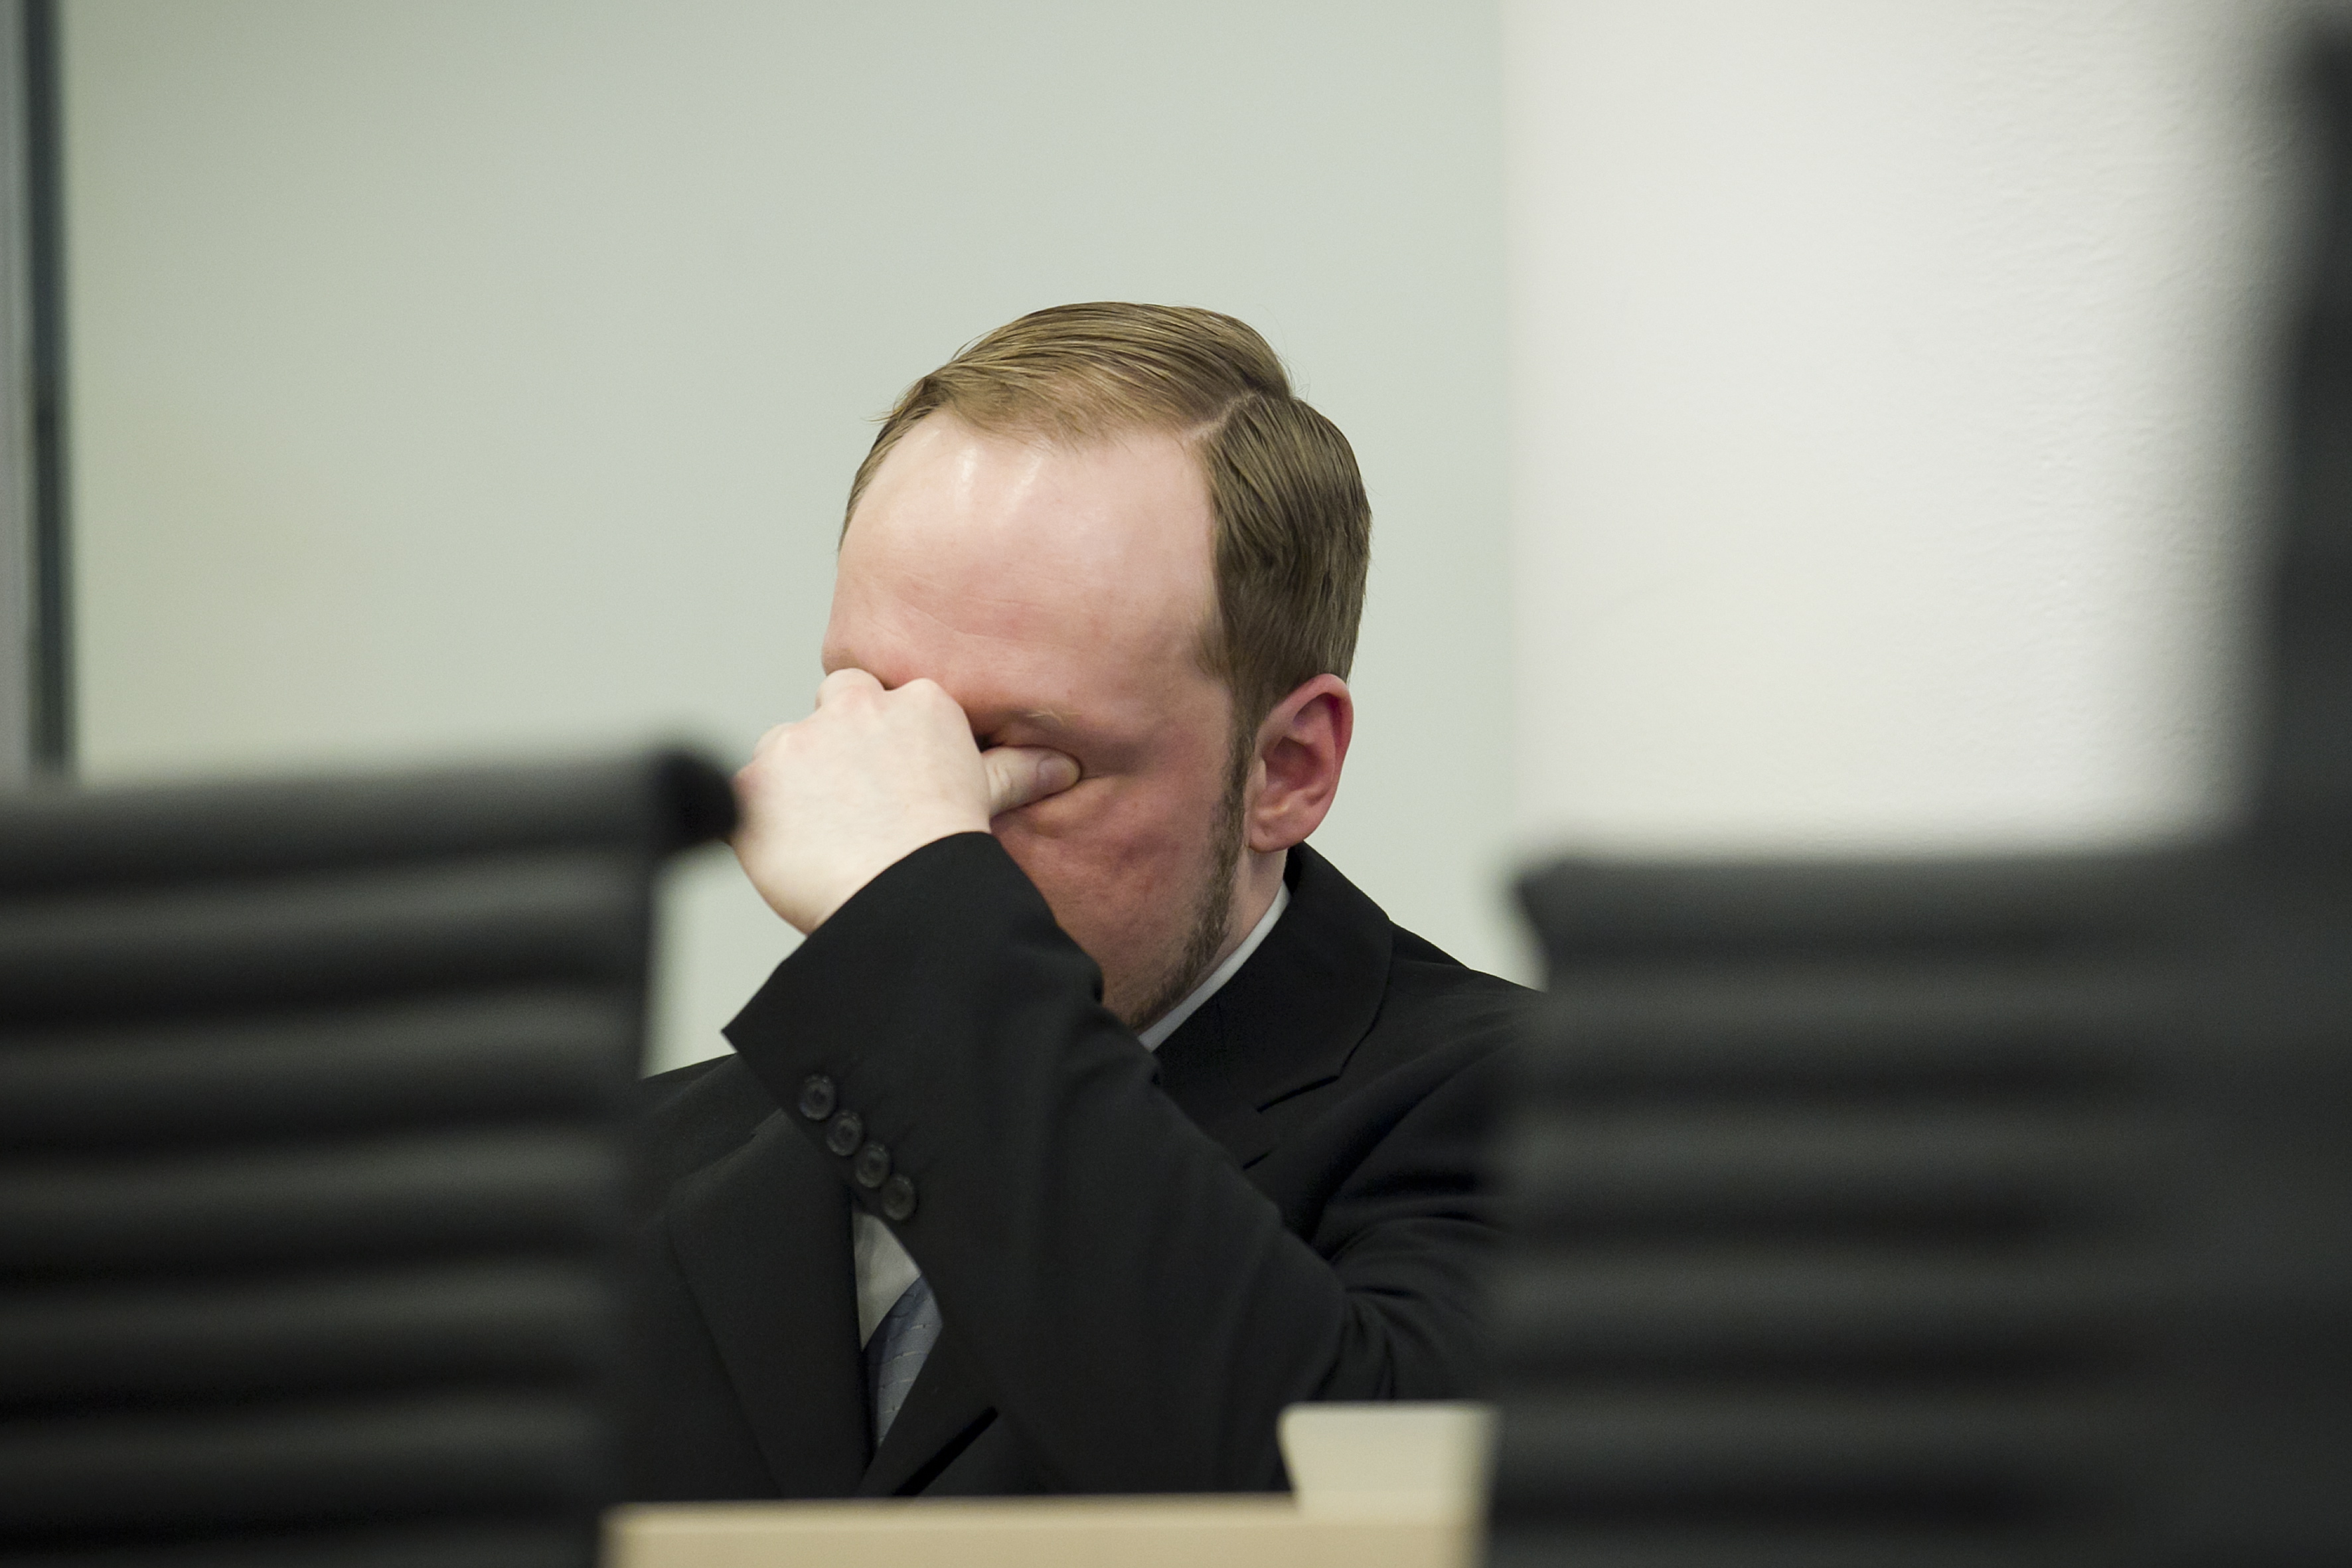 Utøya, Norge, Anders Behring Breivik, Oslo, Vittnesmål, Terrordåd